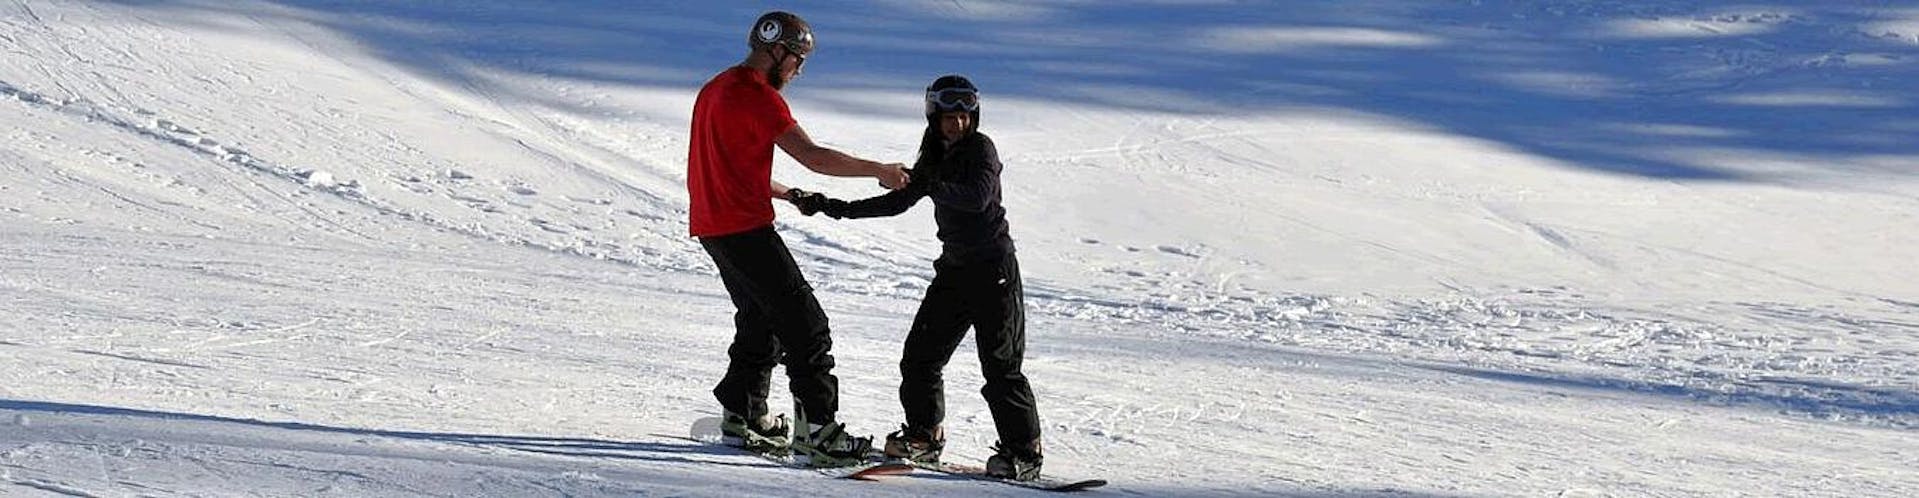 Privater Snowboardkurs für Erwachsene aller Levels.